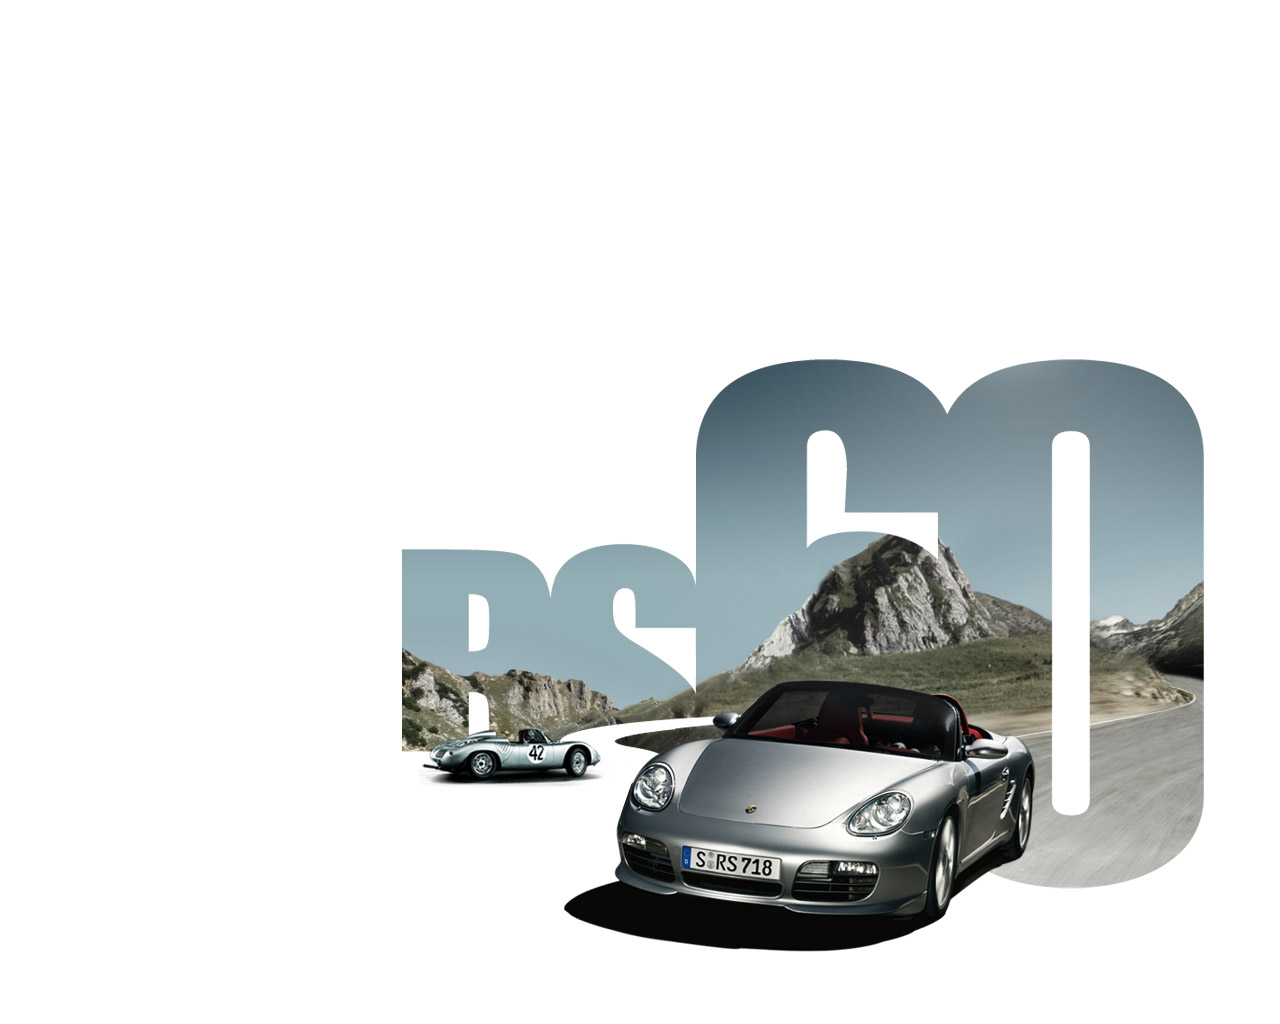 Porsche Boxster RS 60 Spyder & Porsche 718 RS 60 Spyder